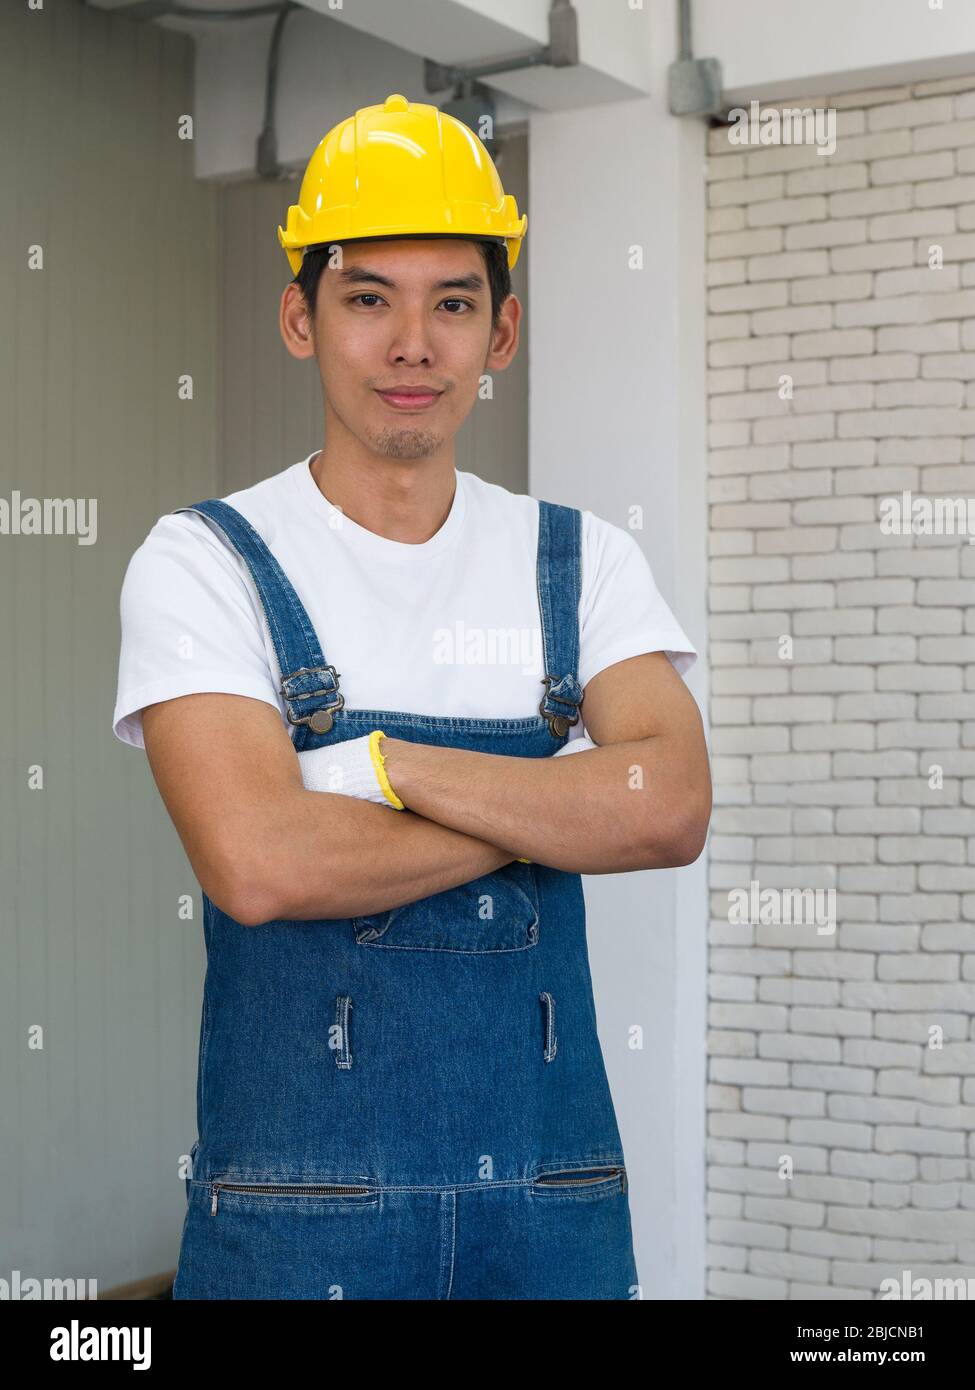 Ein asiatischer Zimmermann, der einen gelben Hut trägt, stellte sich im Werkstattzimmer mit den Armen. Stockfoto